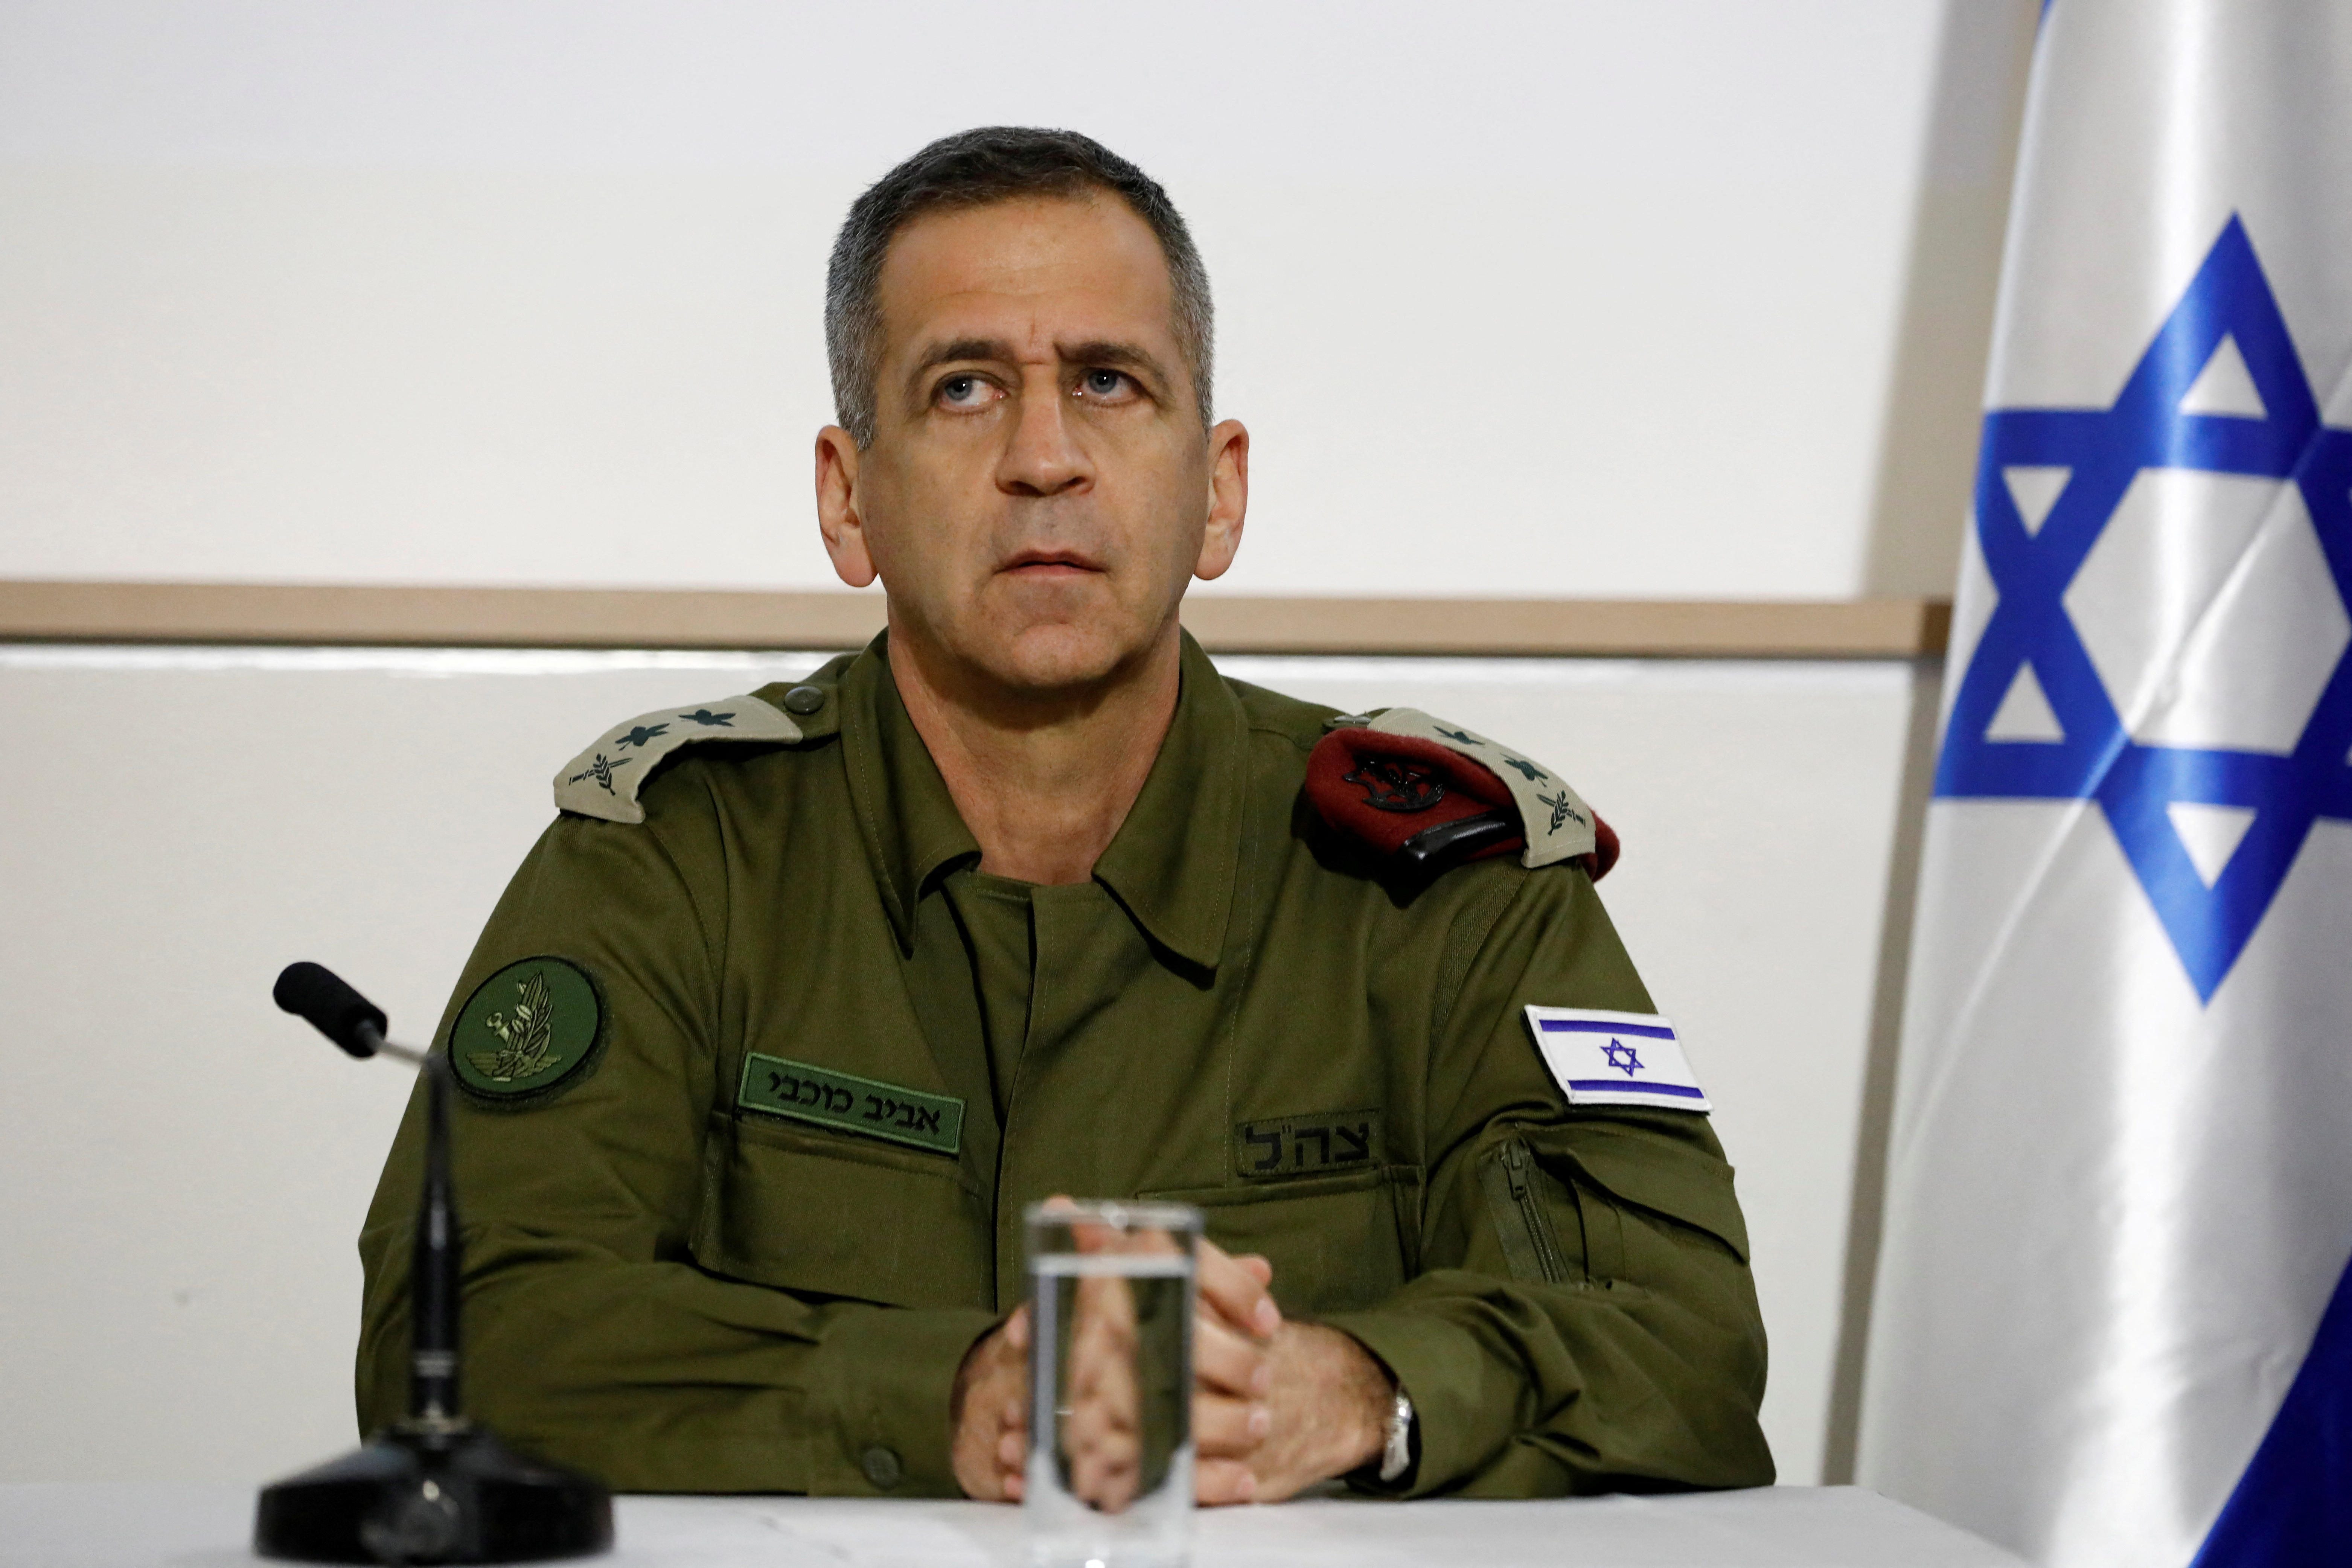 El Jefe de Estado Mayor de las fuerzas armadas israelíes, Aviv Kochavi, observa mientras pronuncia una declaración conjunta en Tel Aviv, Israel.